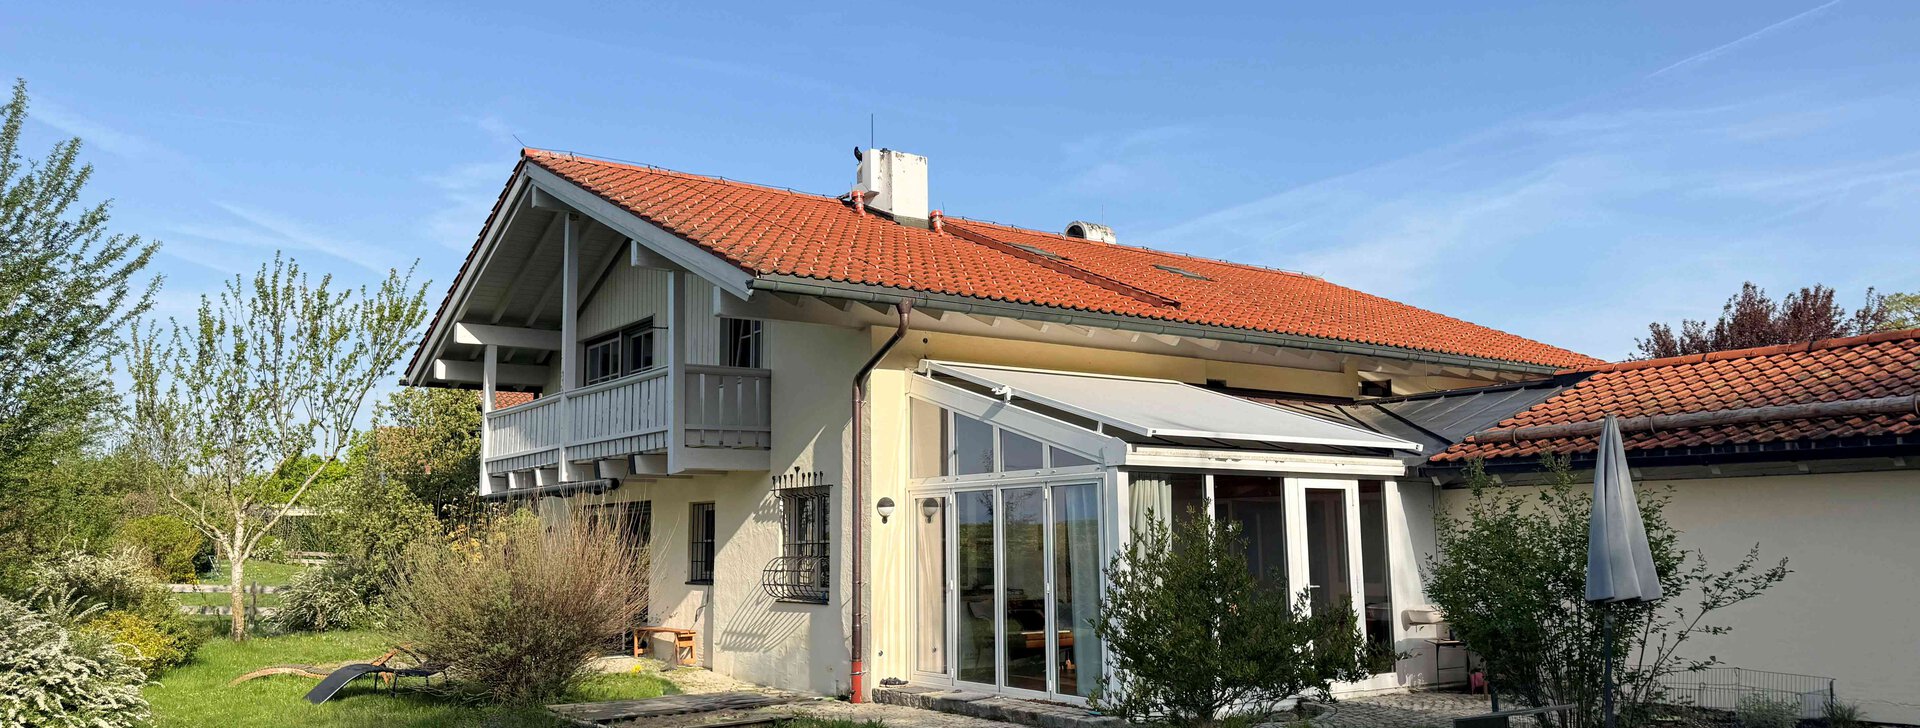 Außenansicht mit Garten, Einfamilienhaus mit Einliegerwohnung, Immobilie kaufen, Traunstein | © HausBauHaus GmbH 